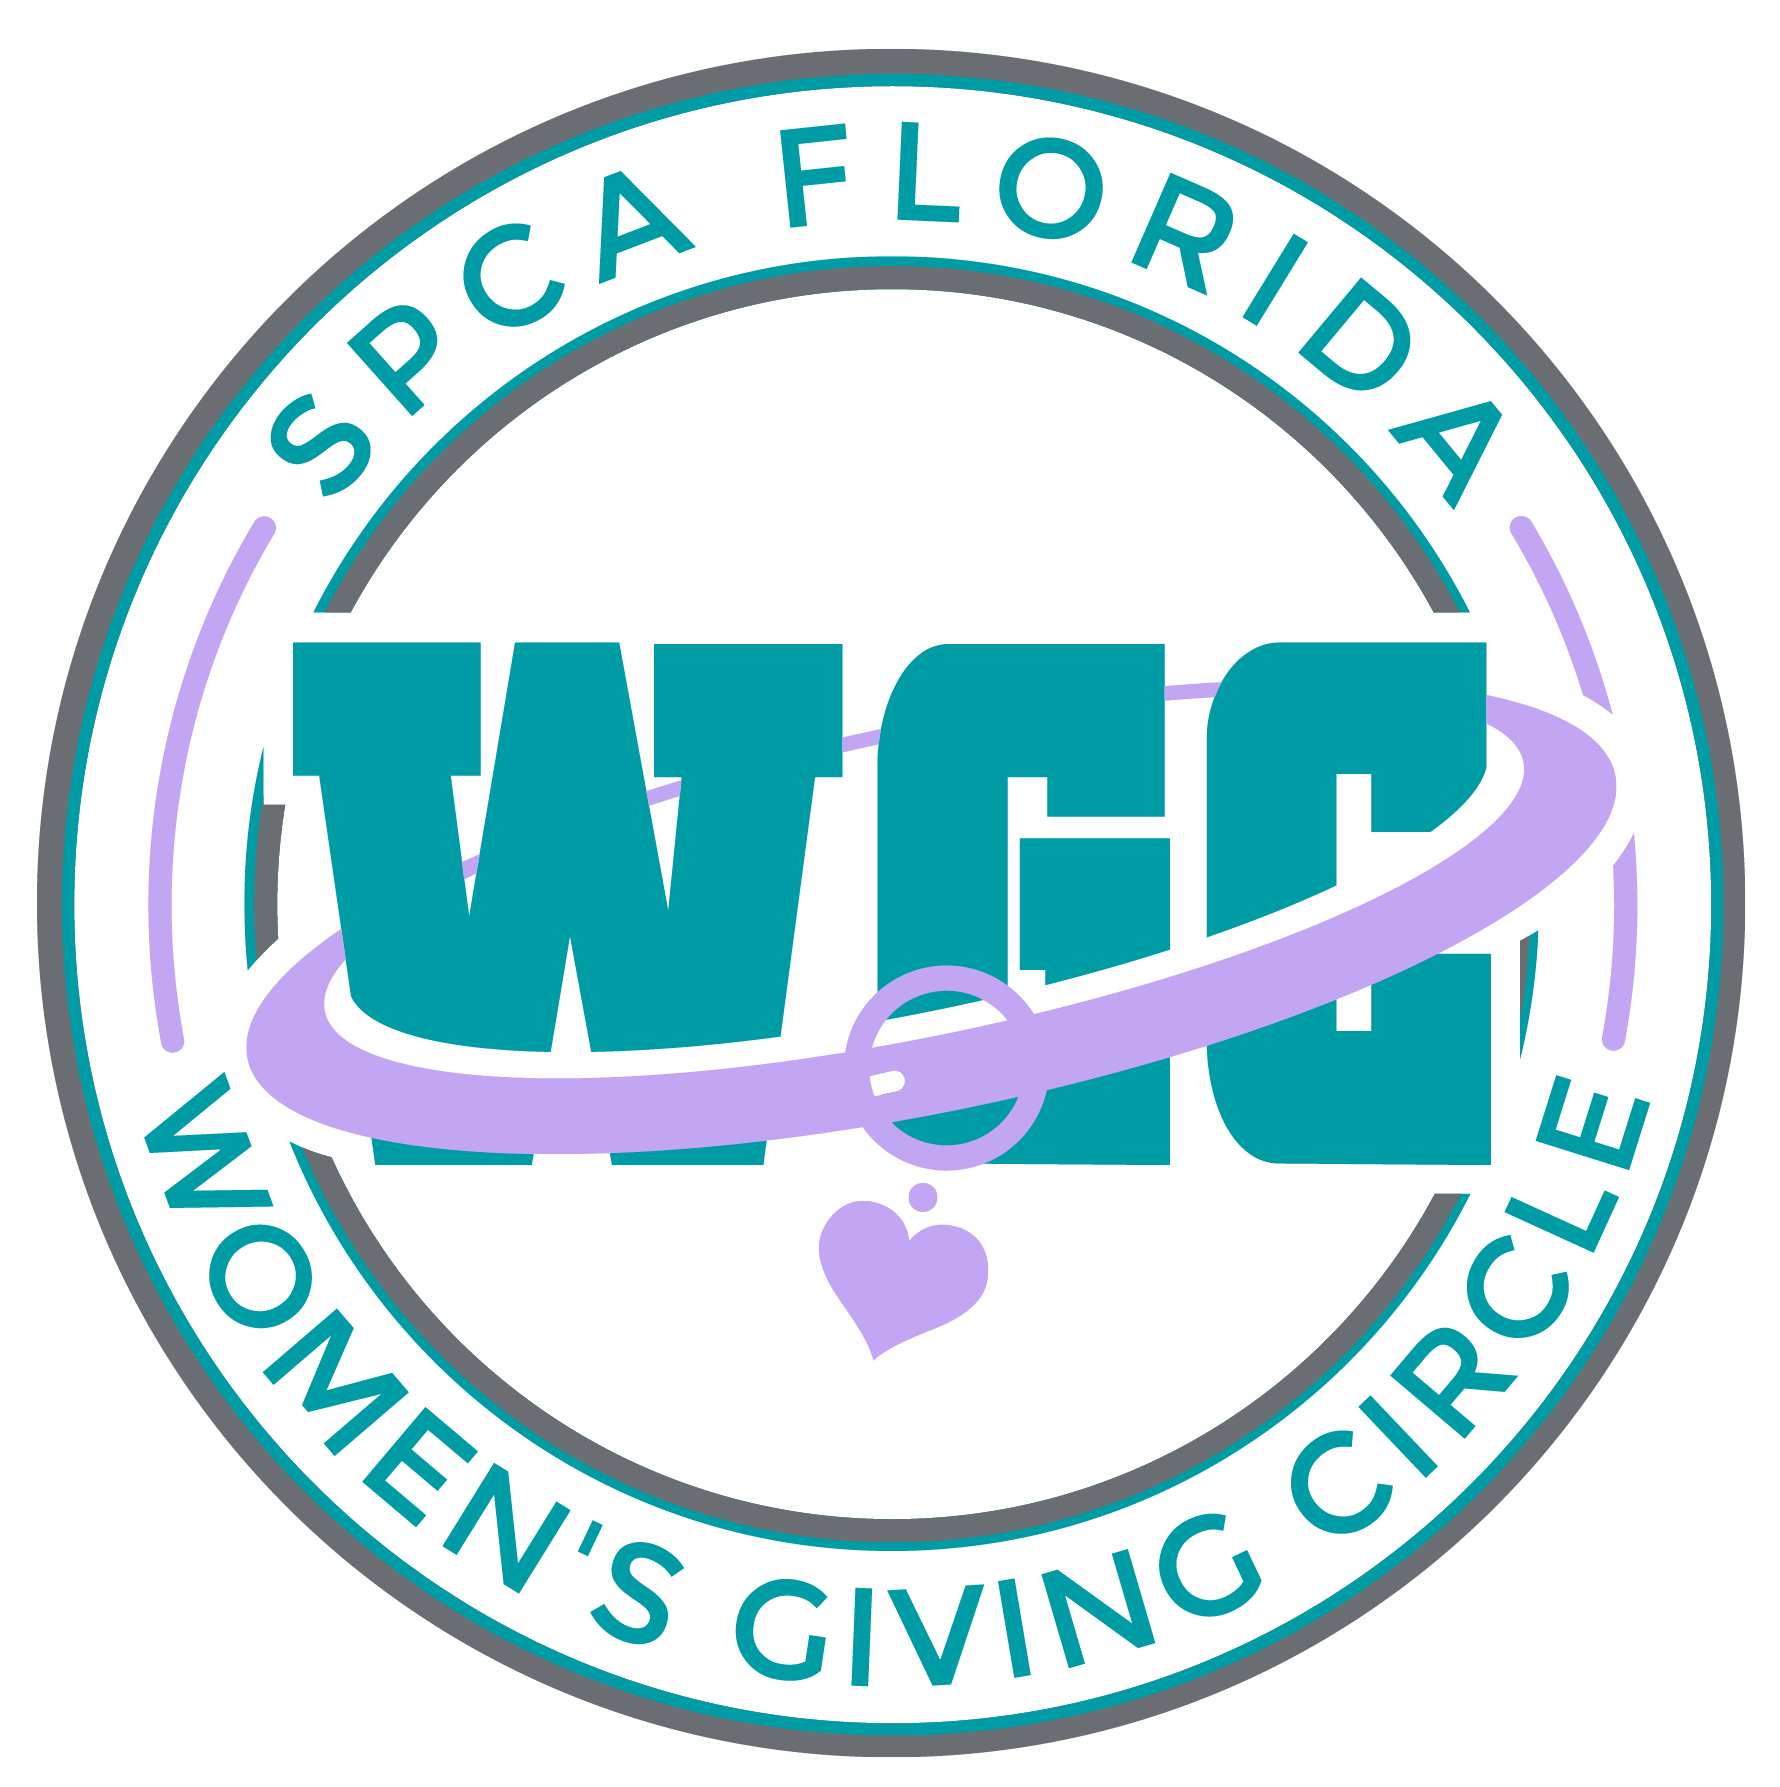 SPCA Florida Women's Giving Circle